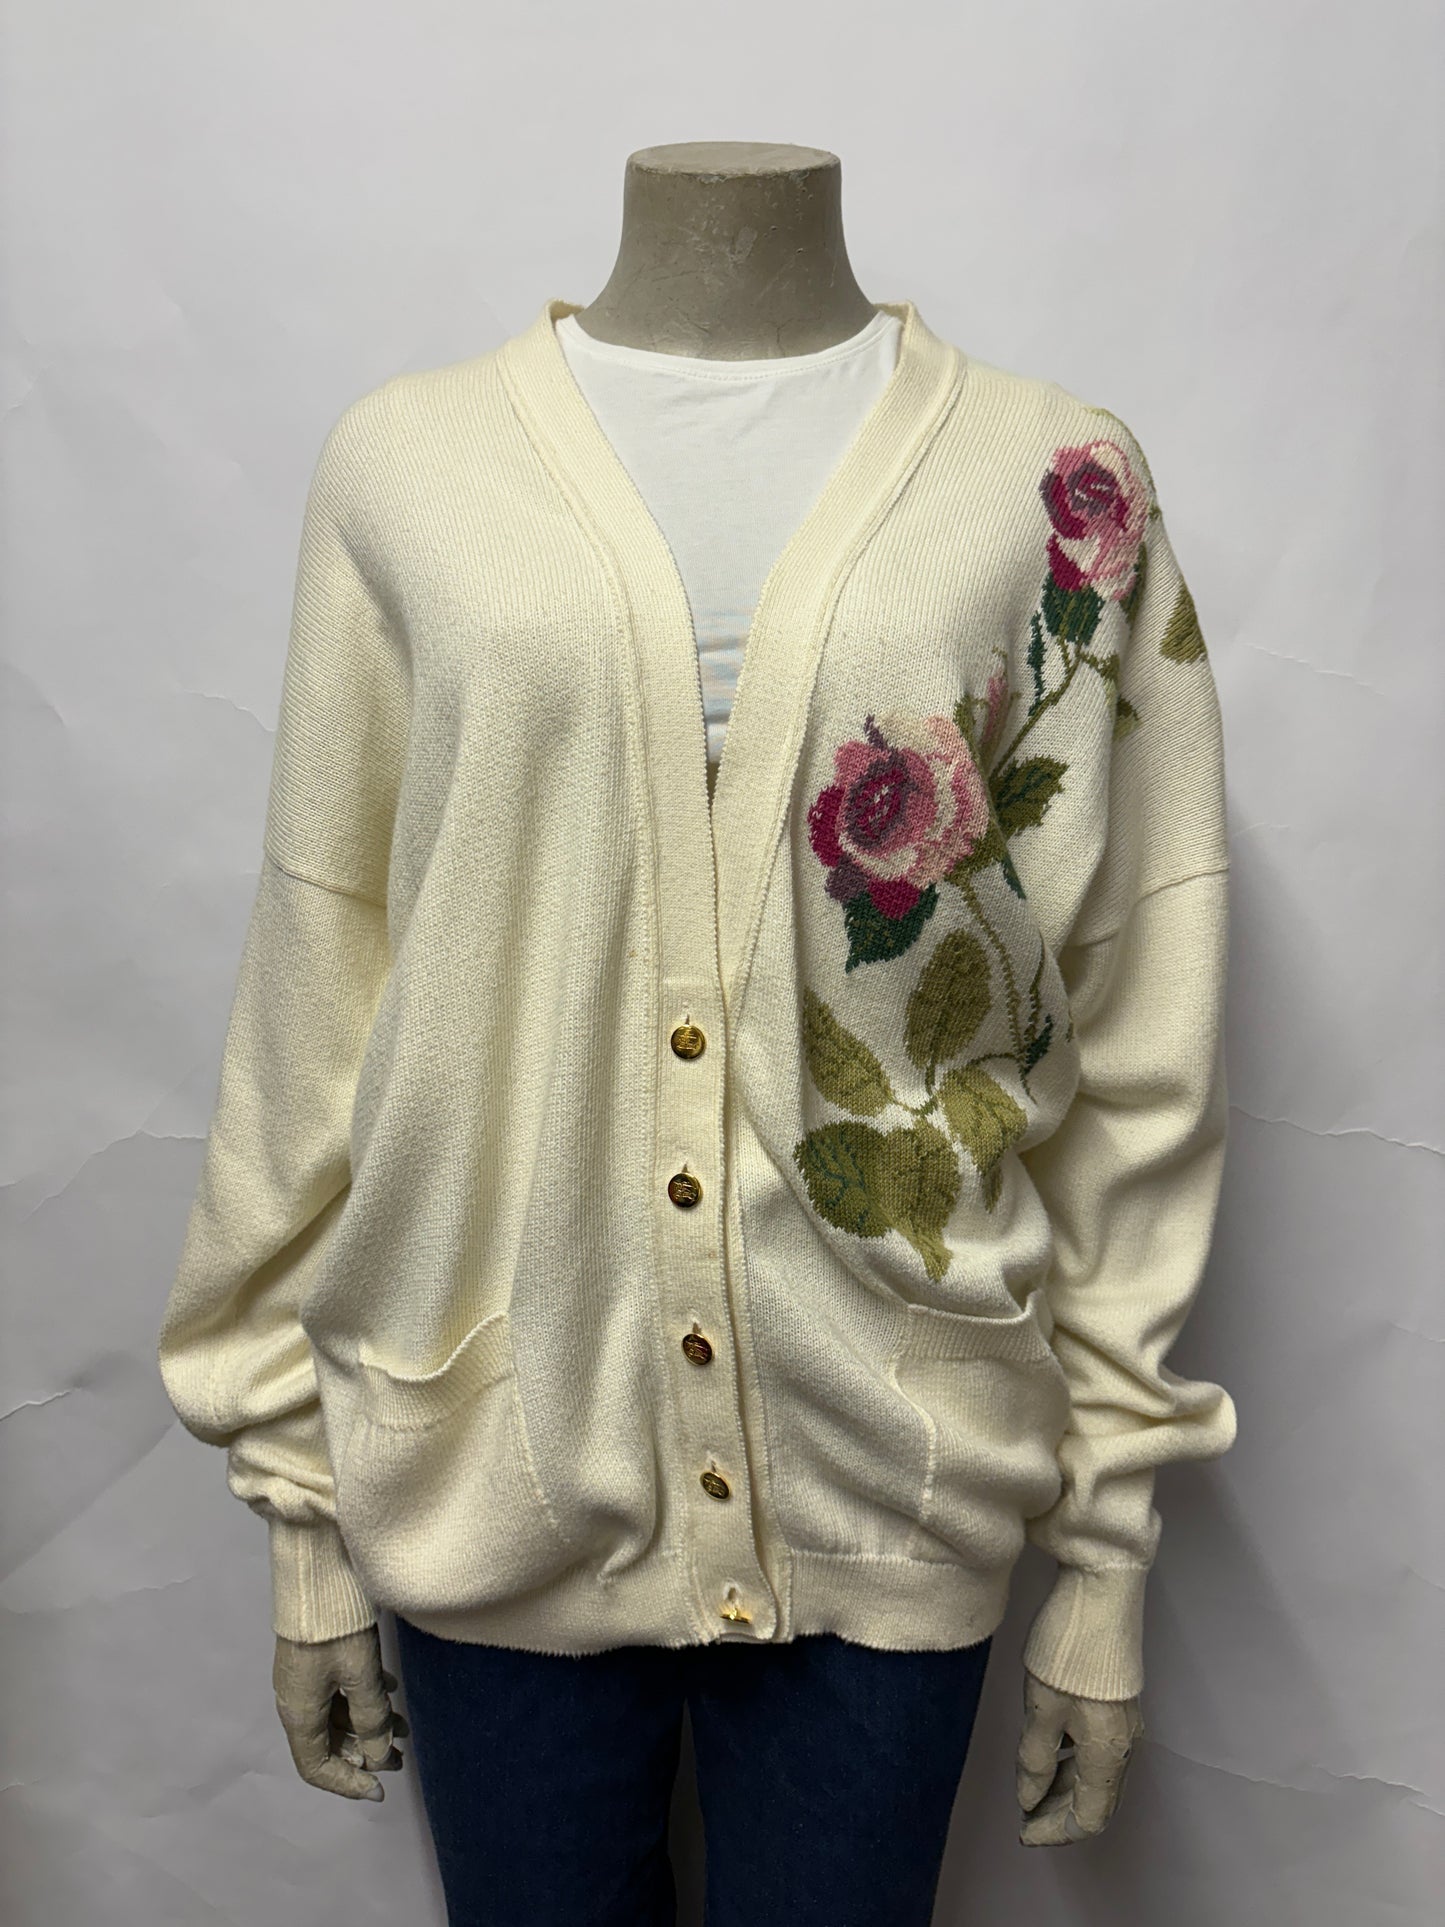 Burberry's Vintage Floral Button Up Cotton Cardigan 42"